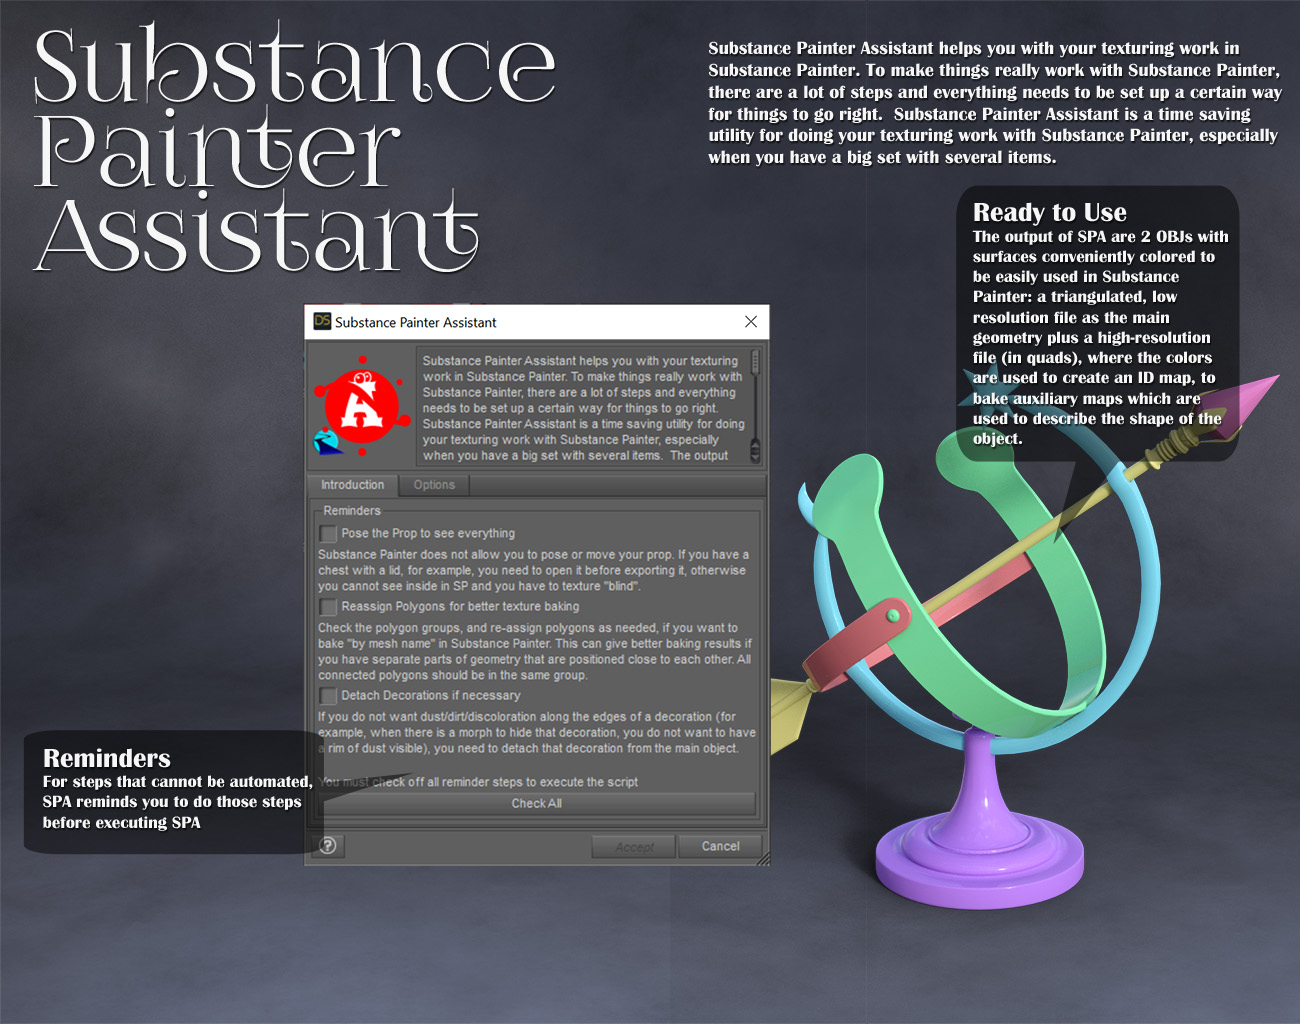 Substance Painter Assistant by: RiverSoft Art, 3D Models by Daz 3D